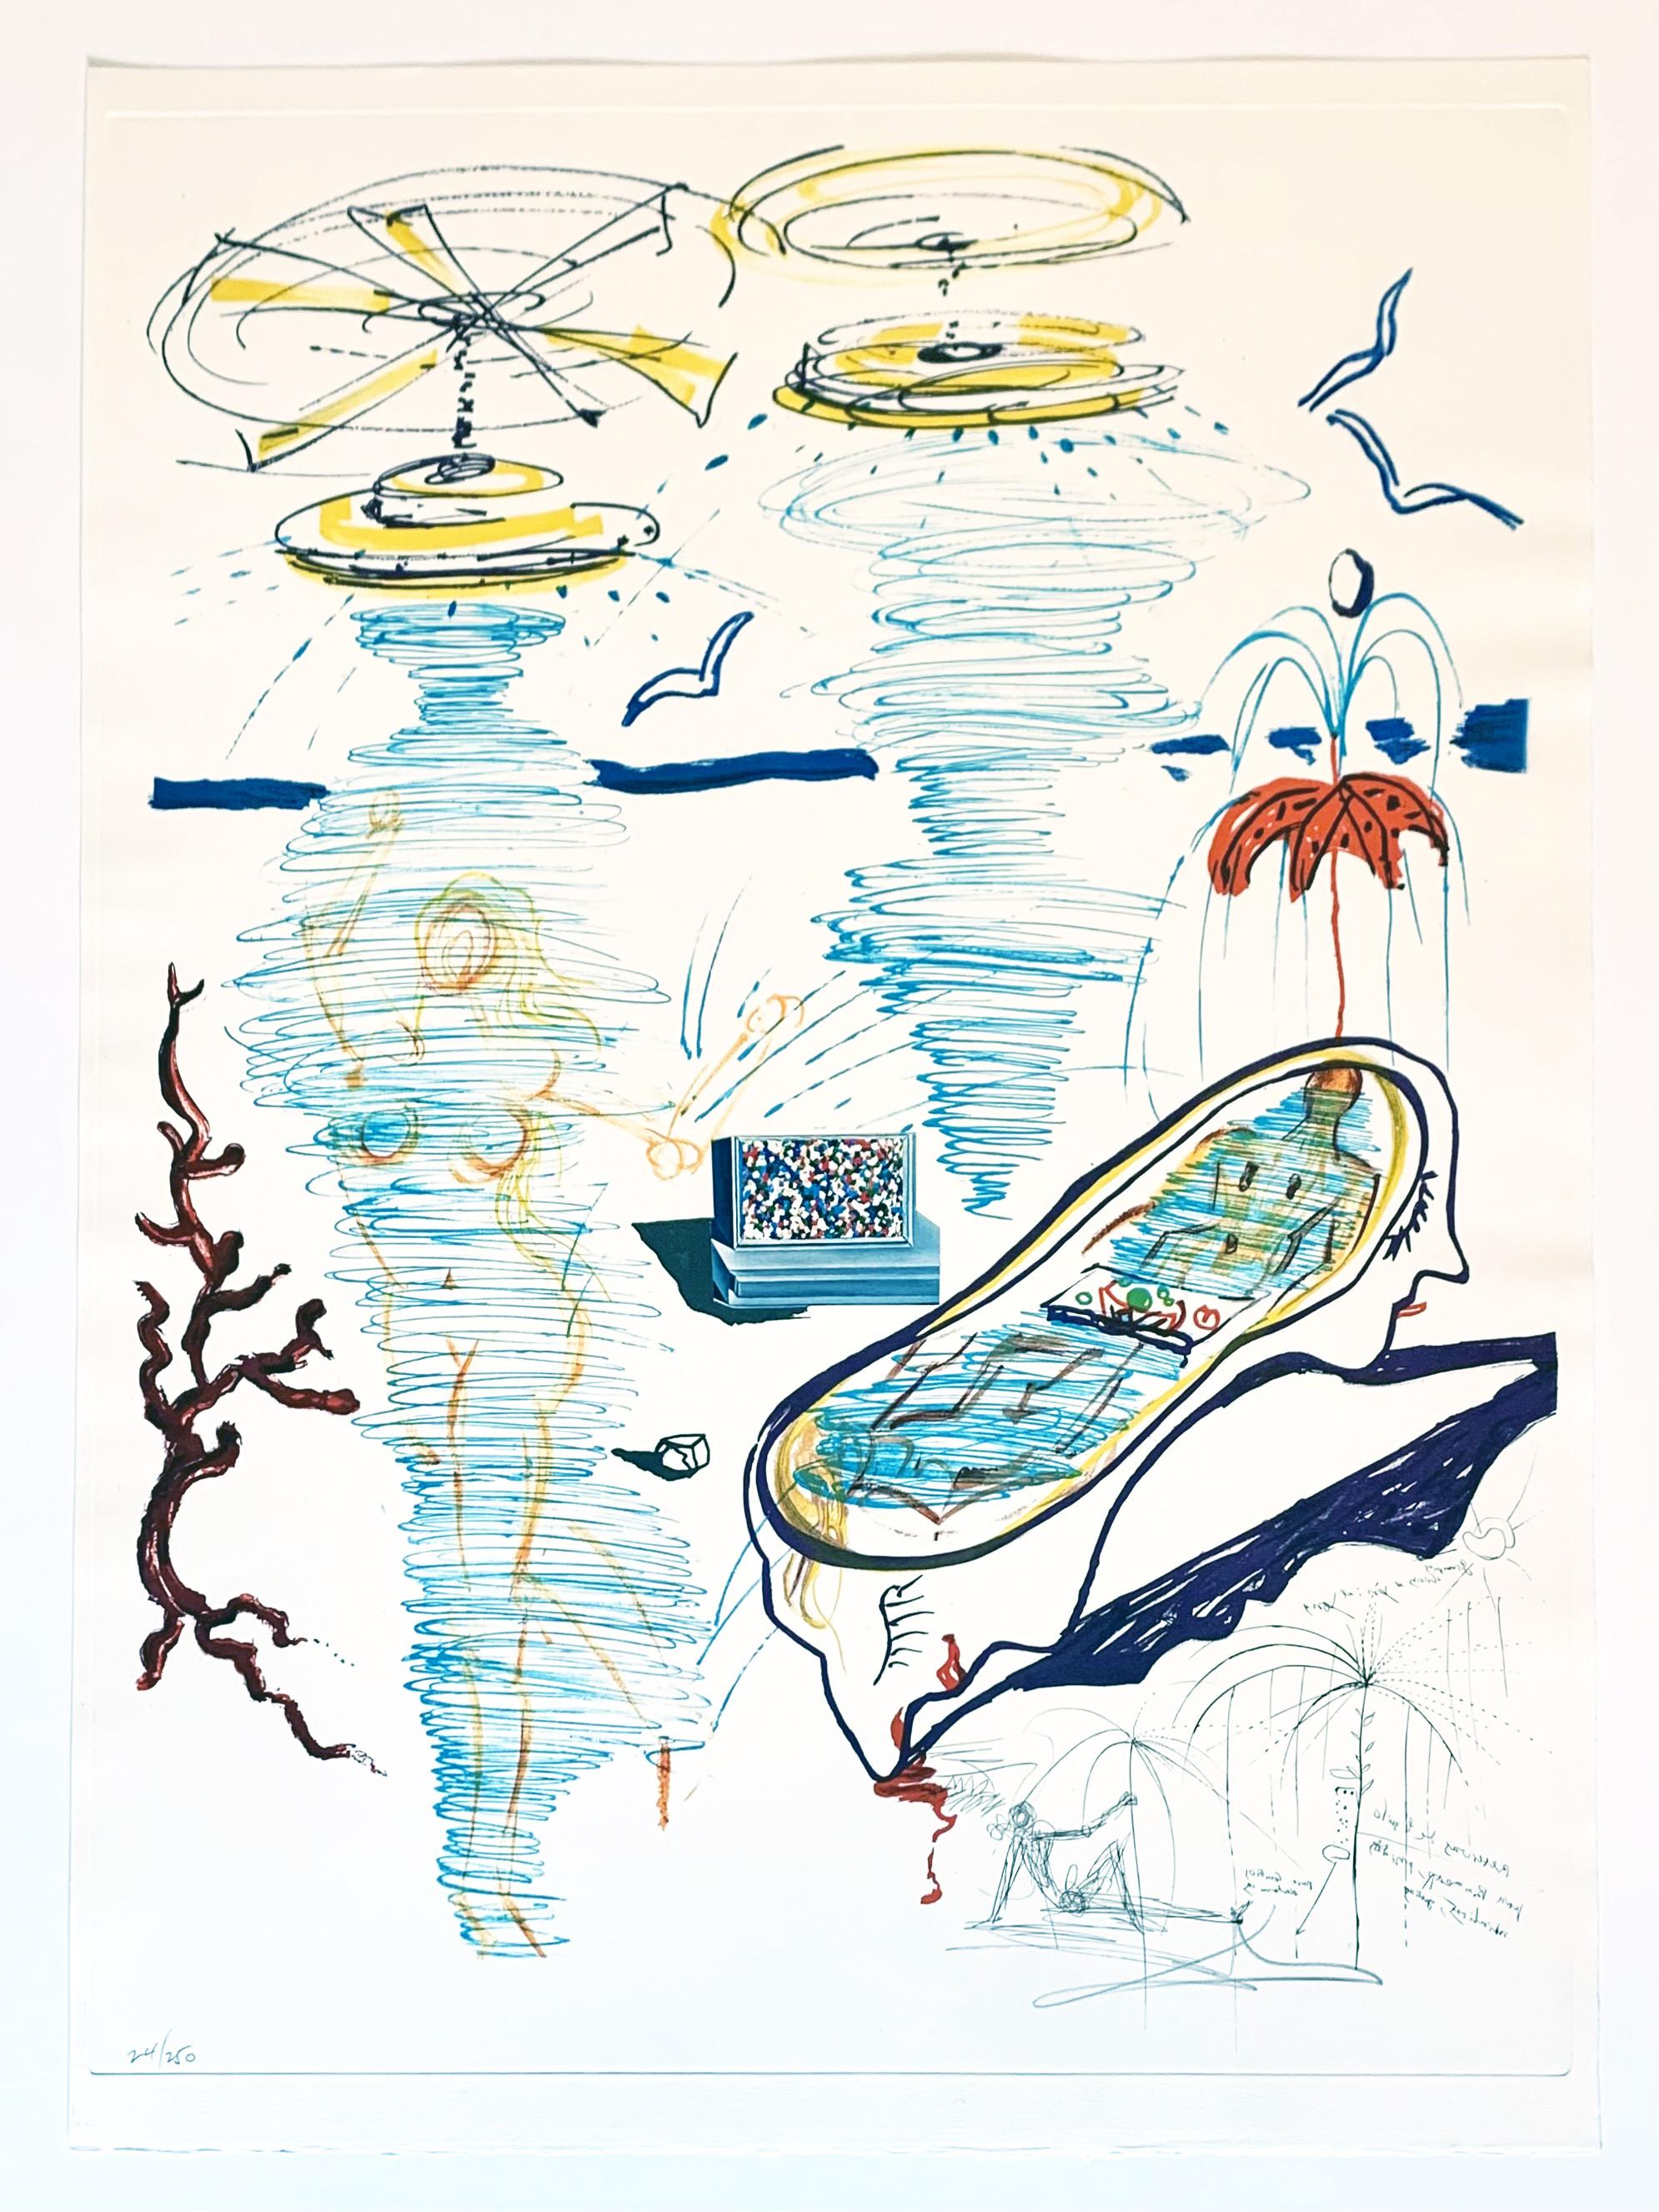 Liquid Tornado Bathtub - Print by Salvador Dalí